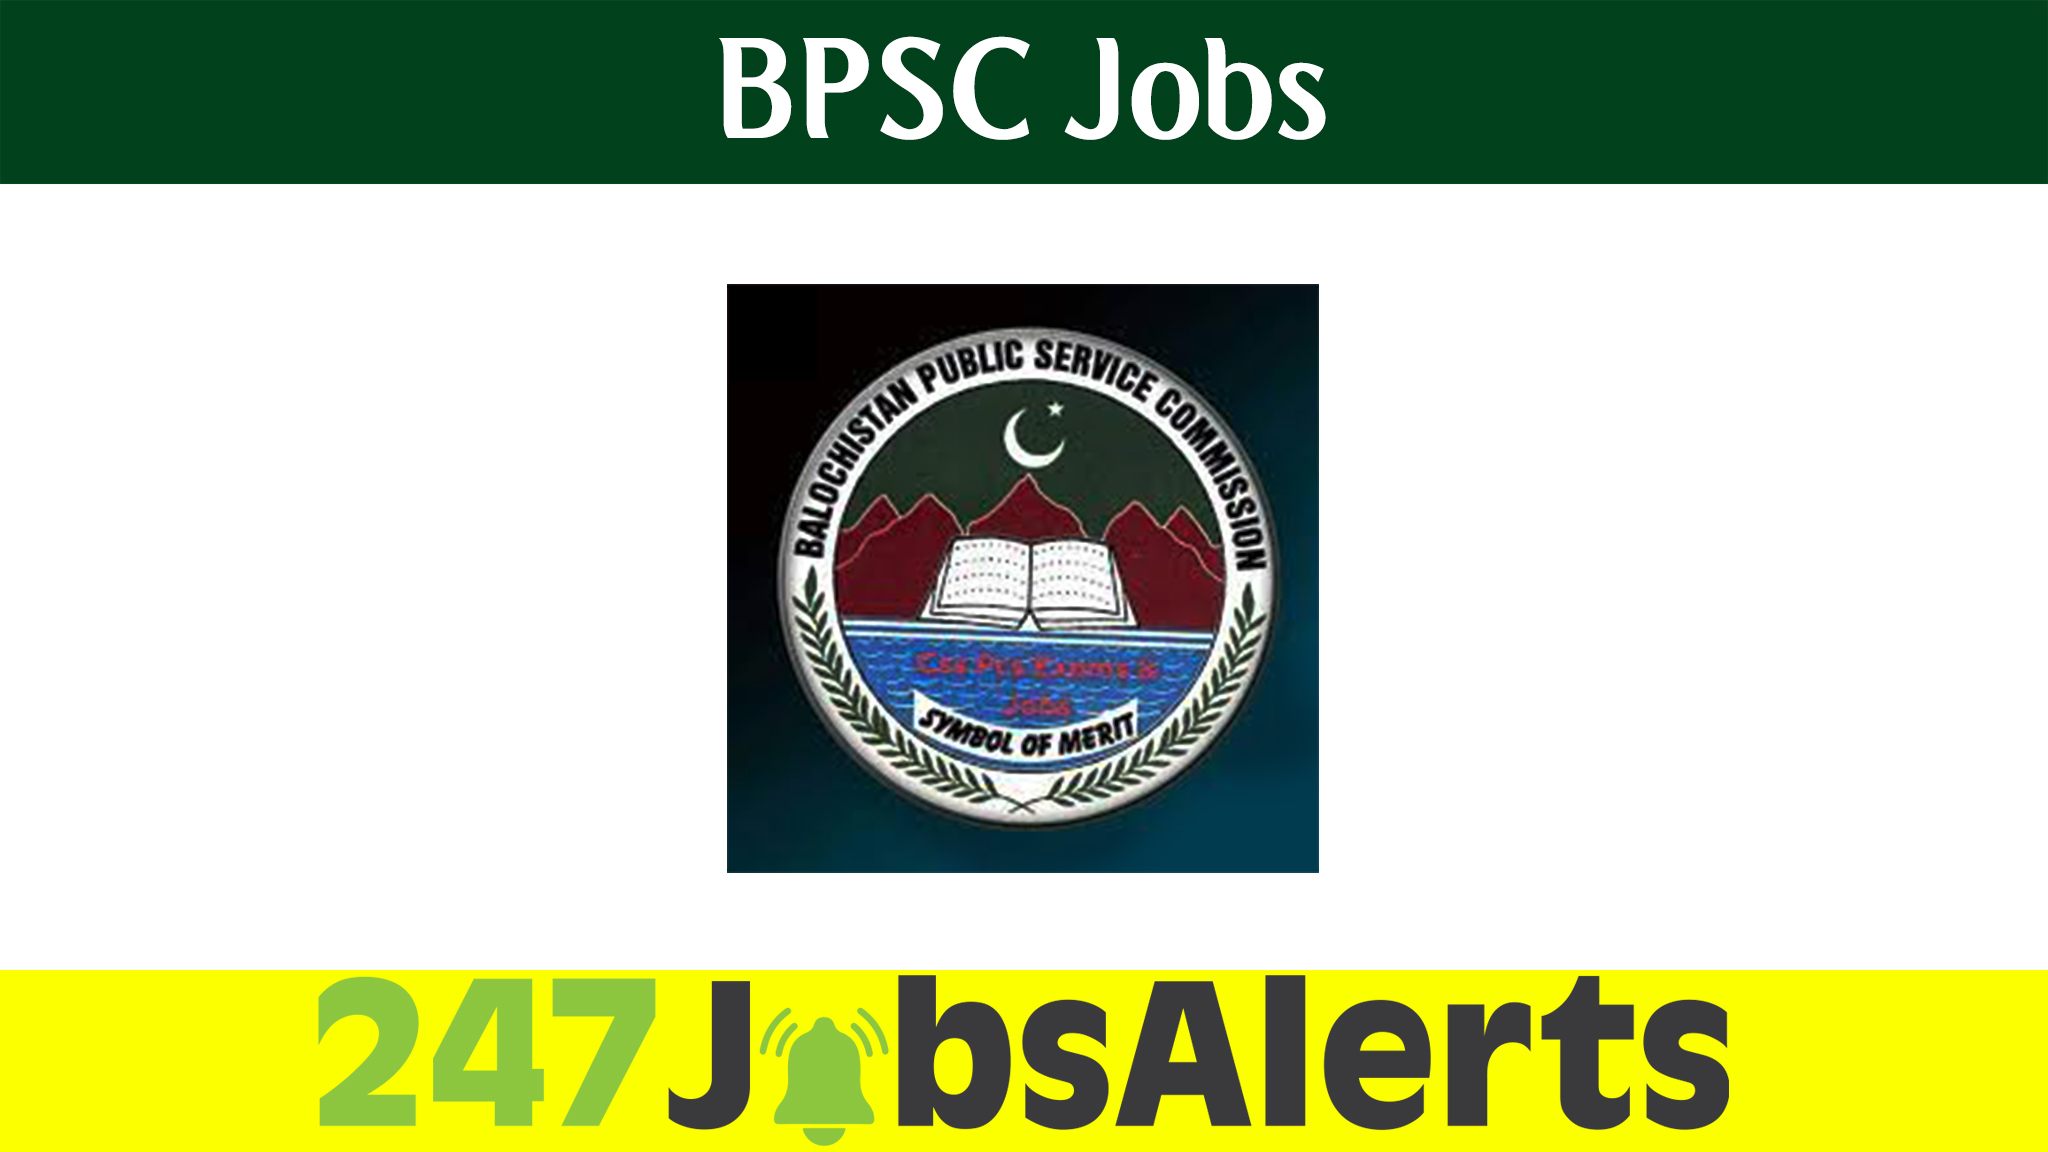 BPSC Jobs 